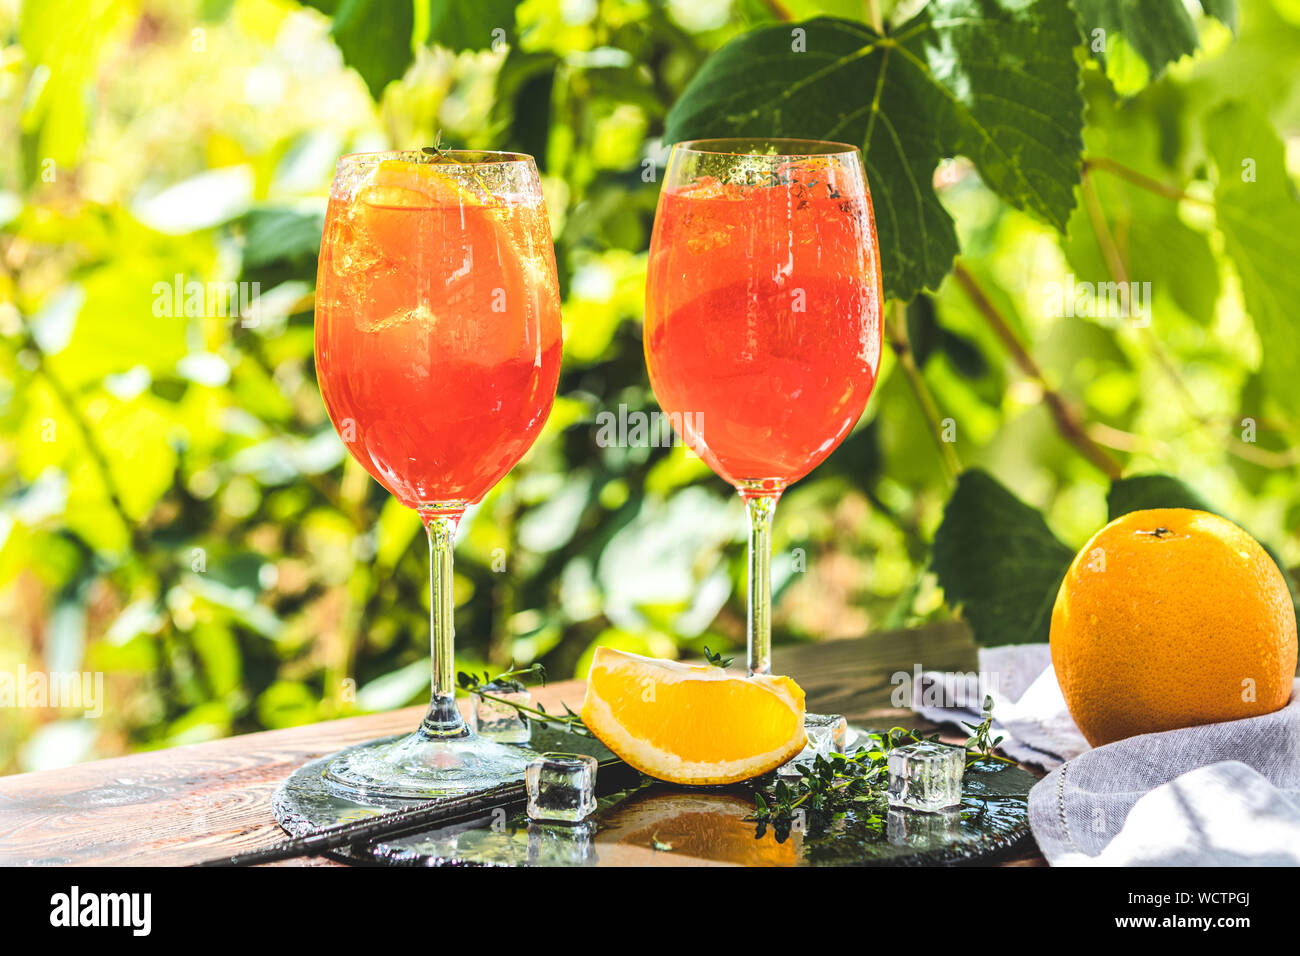 Zwei Aperol Spritz Cocktail in großen Wein Glas mit Orangen, Sommer  Italienisch frische Alkohol kaltes Getränk. Sonniger Garten mit Weinberg  Hintergrund, Sommer Stimmung Stockfotografie - Alamy